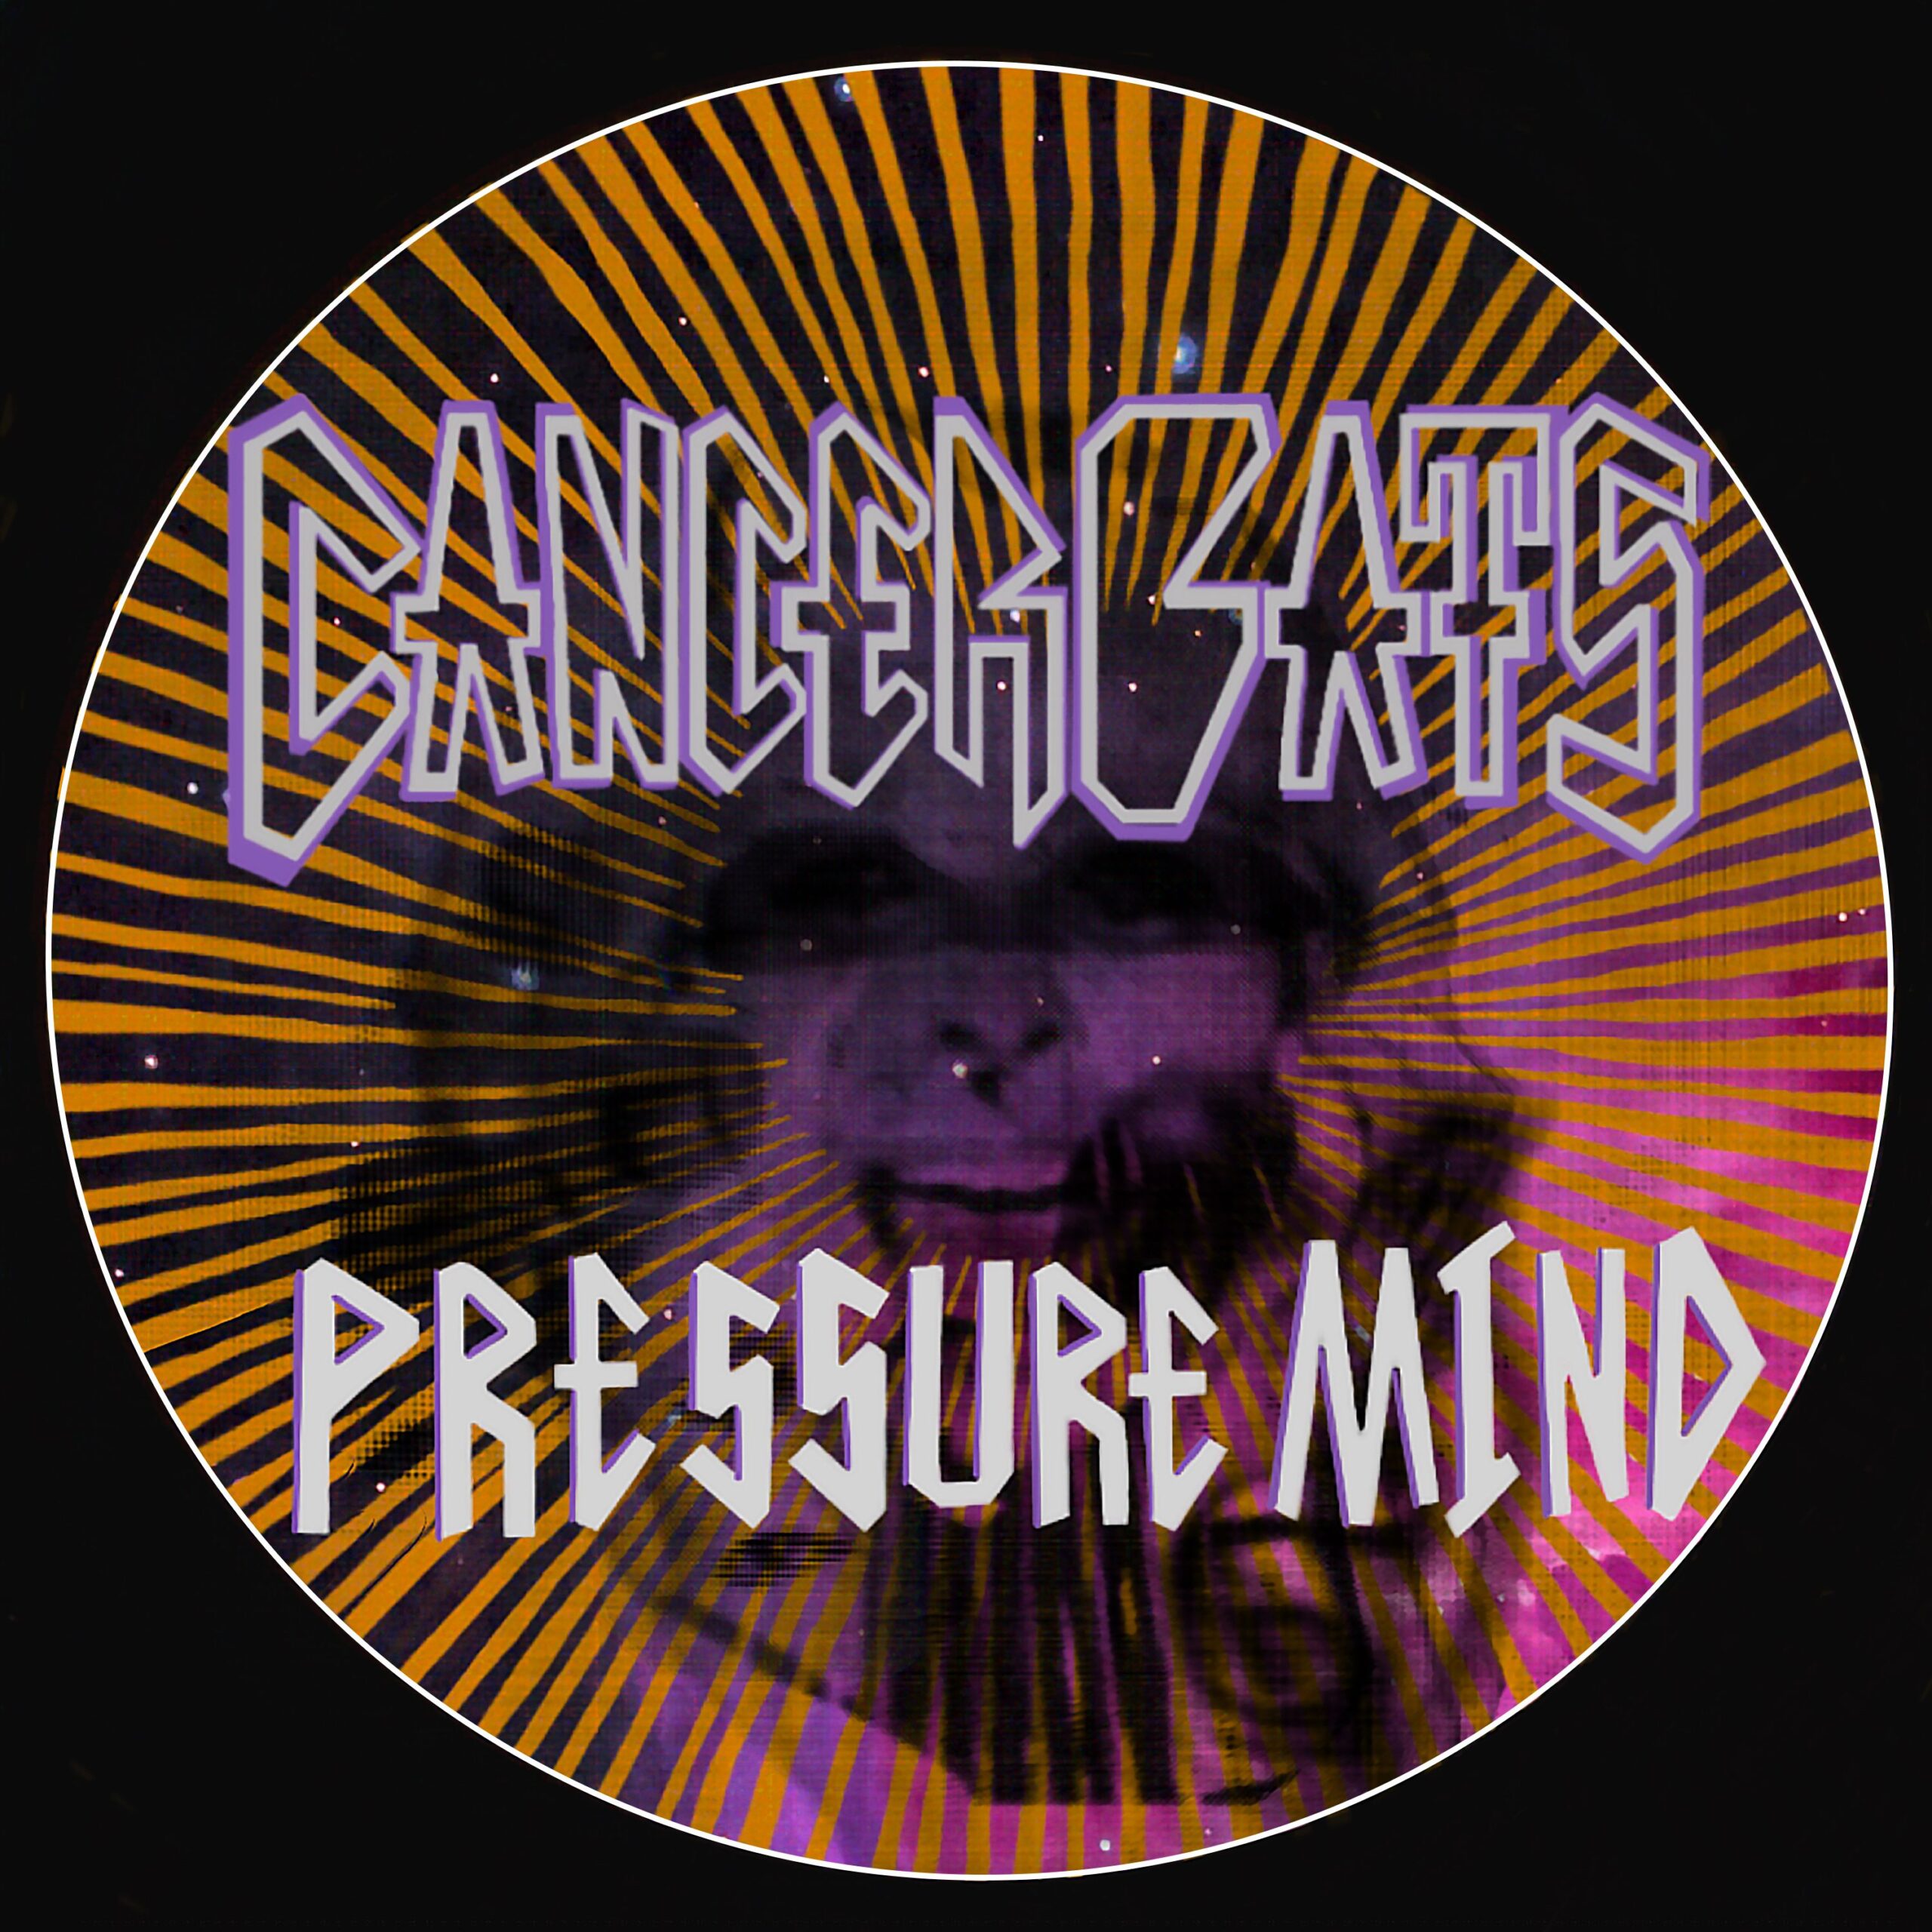 Cancer Bats Single-Release: „Pressure Mind“